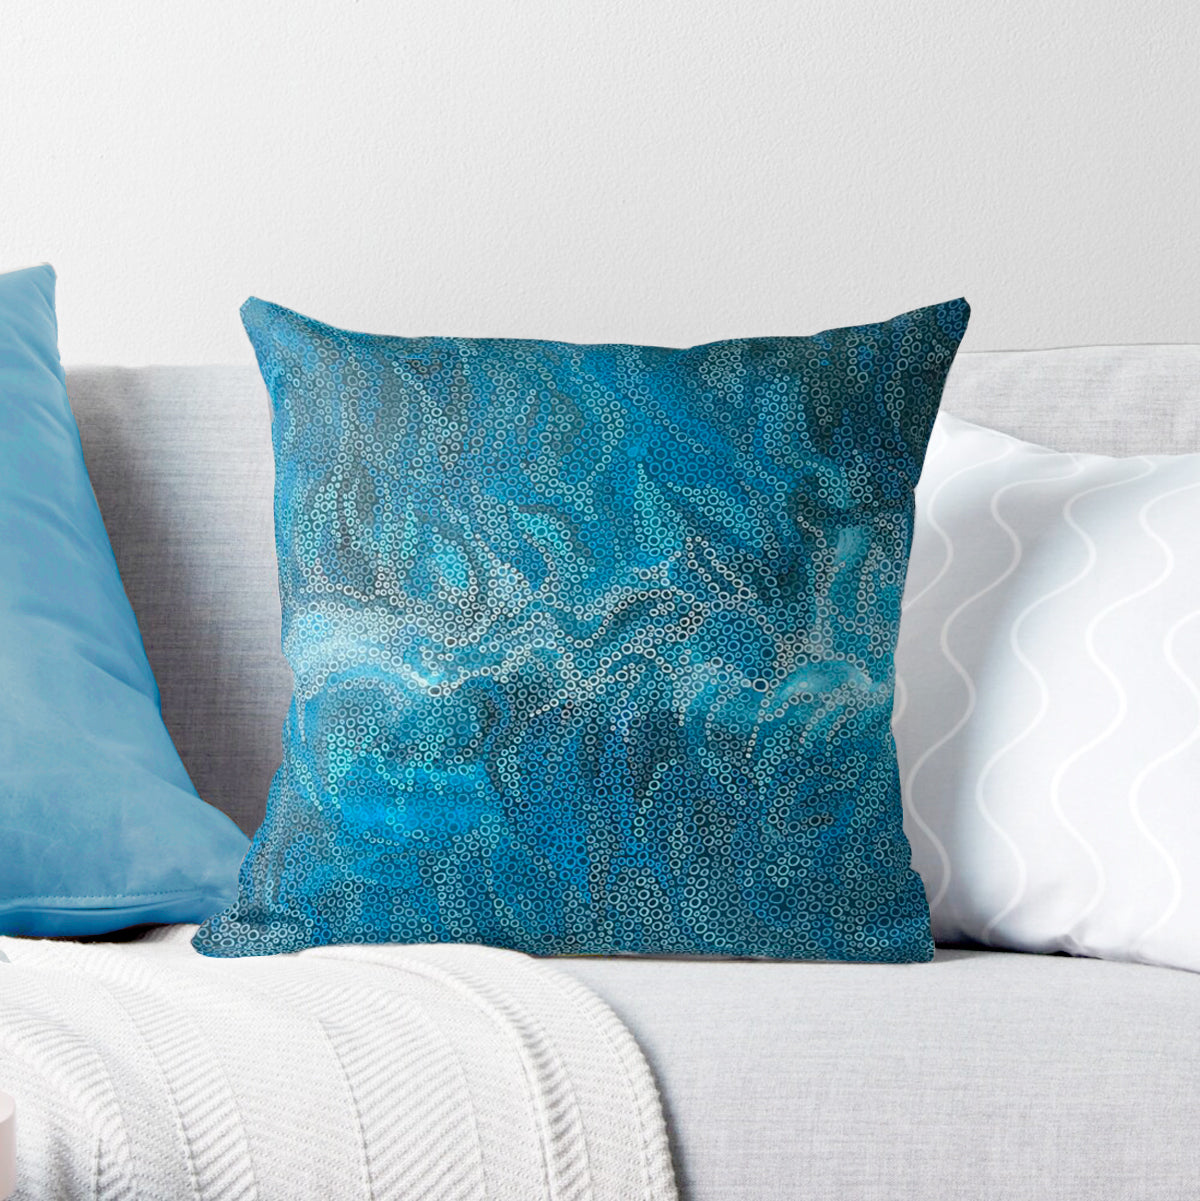 Ocean Break decorative cushion cover